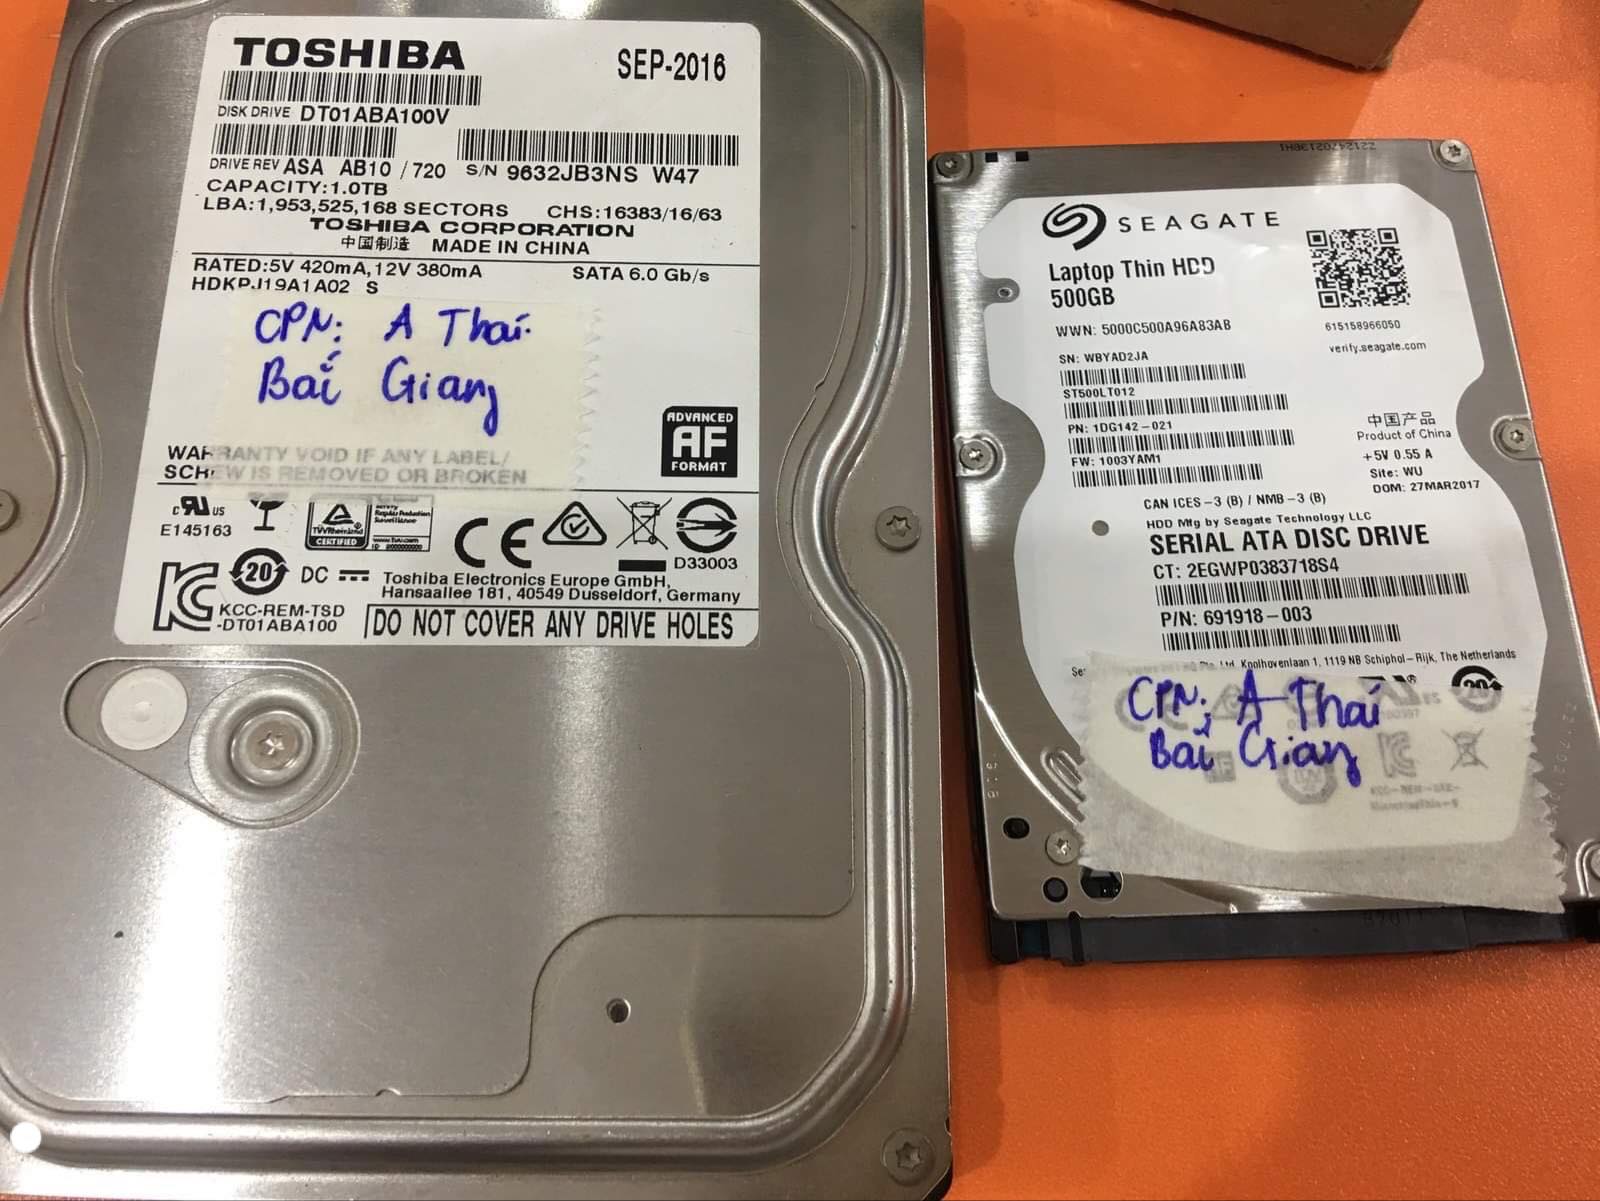 Cứu dữ liệu ổ cứng Toshiba 1TB không nhận tại Bắc Giang 05/09/2019 - cuumaytinh